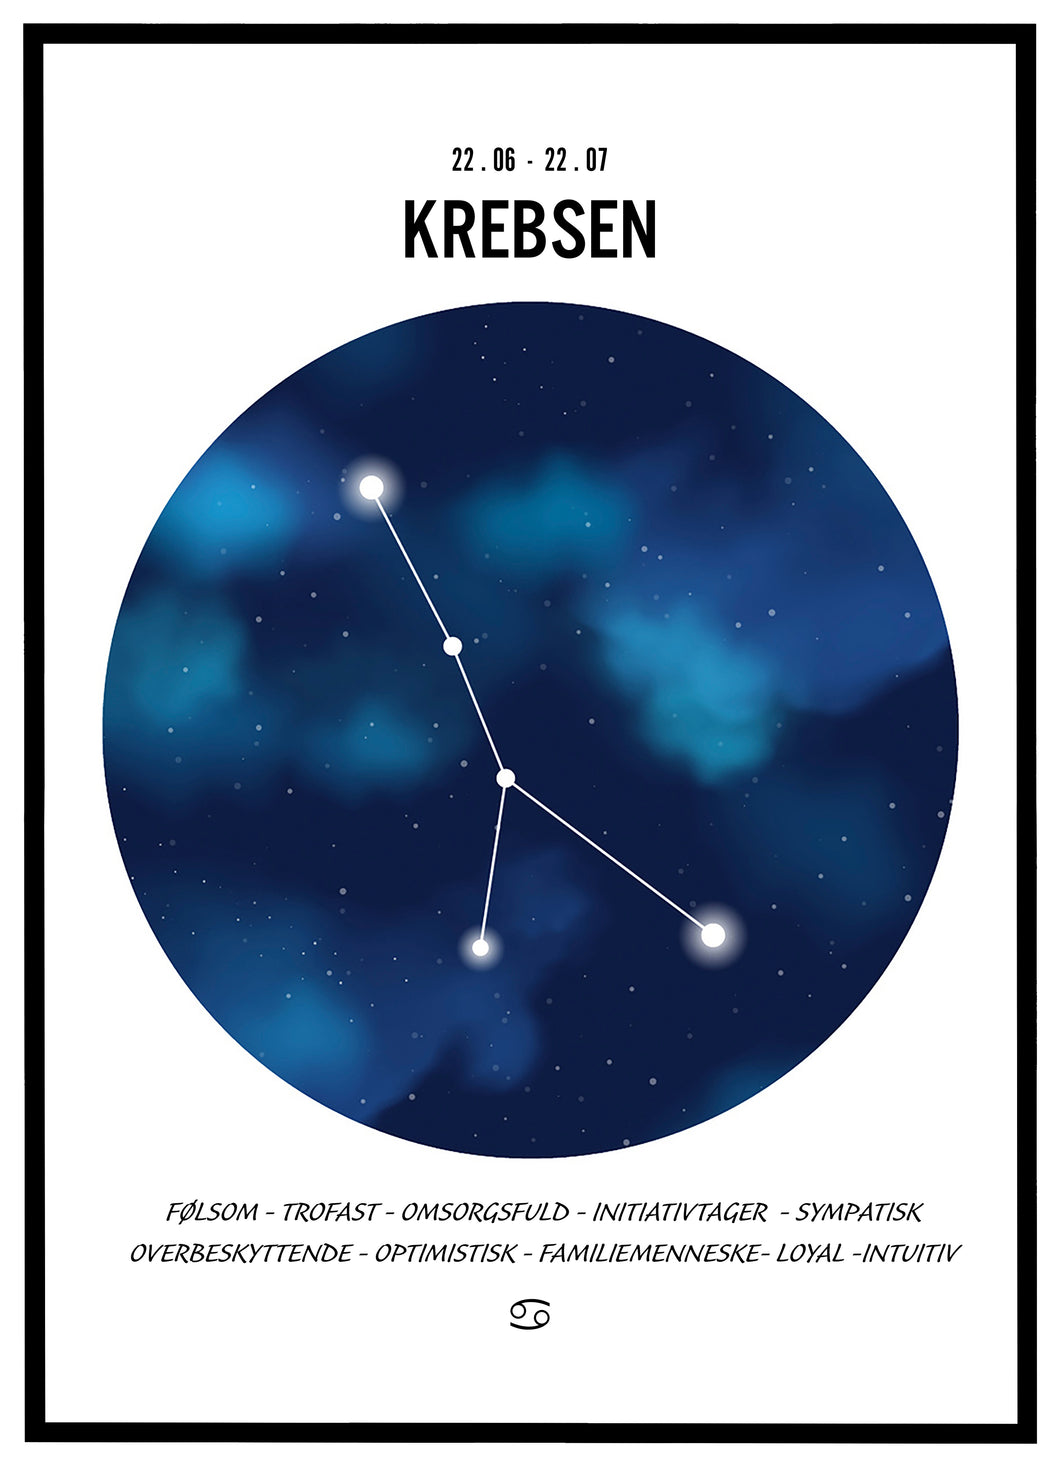 Stjernehimmel plakat - Krebsen